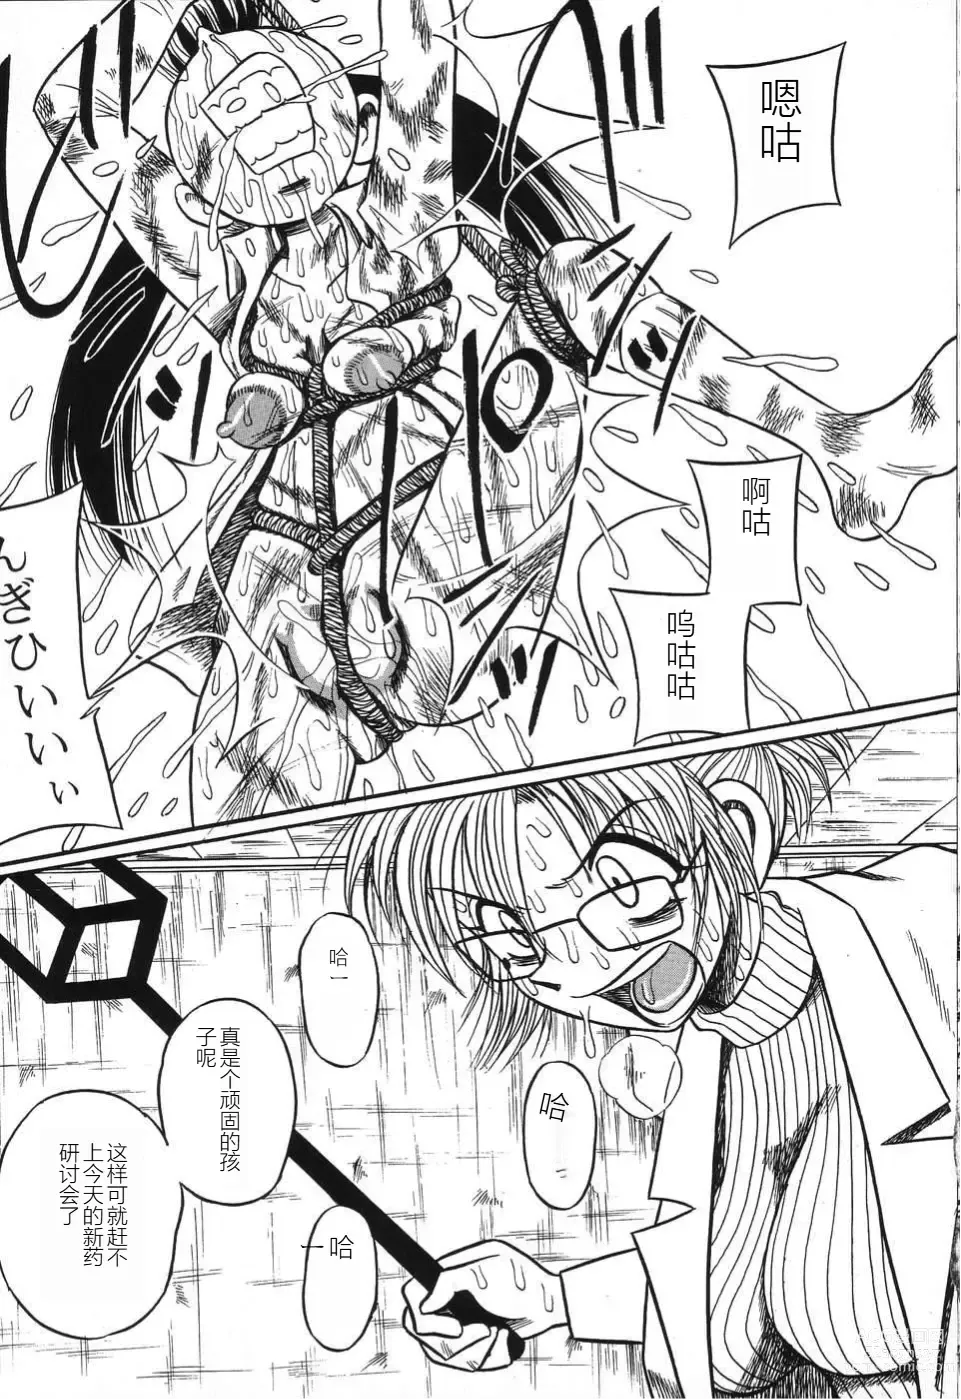 Page 7 of manga Imouto Bakunyuu Shibori